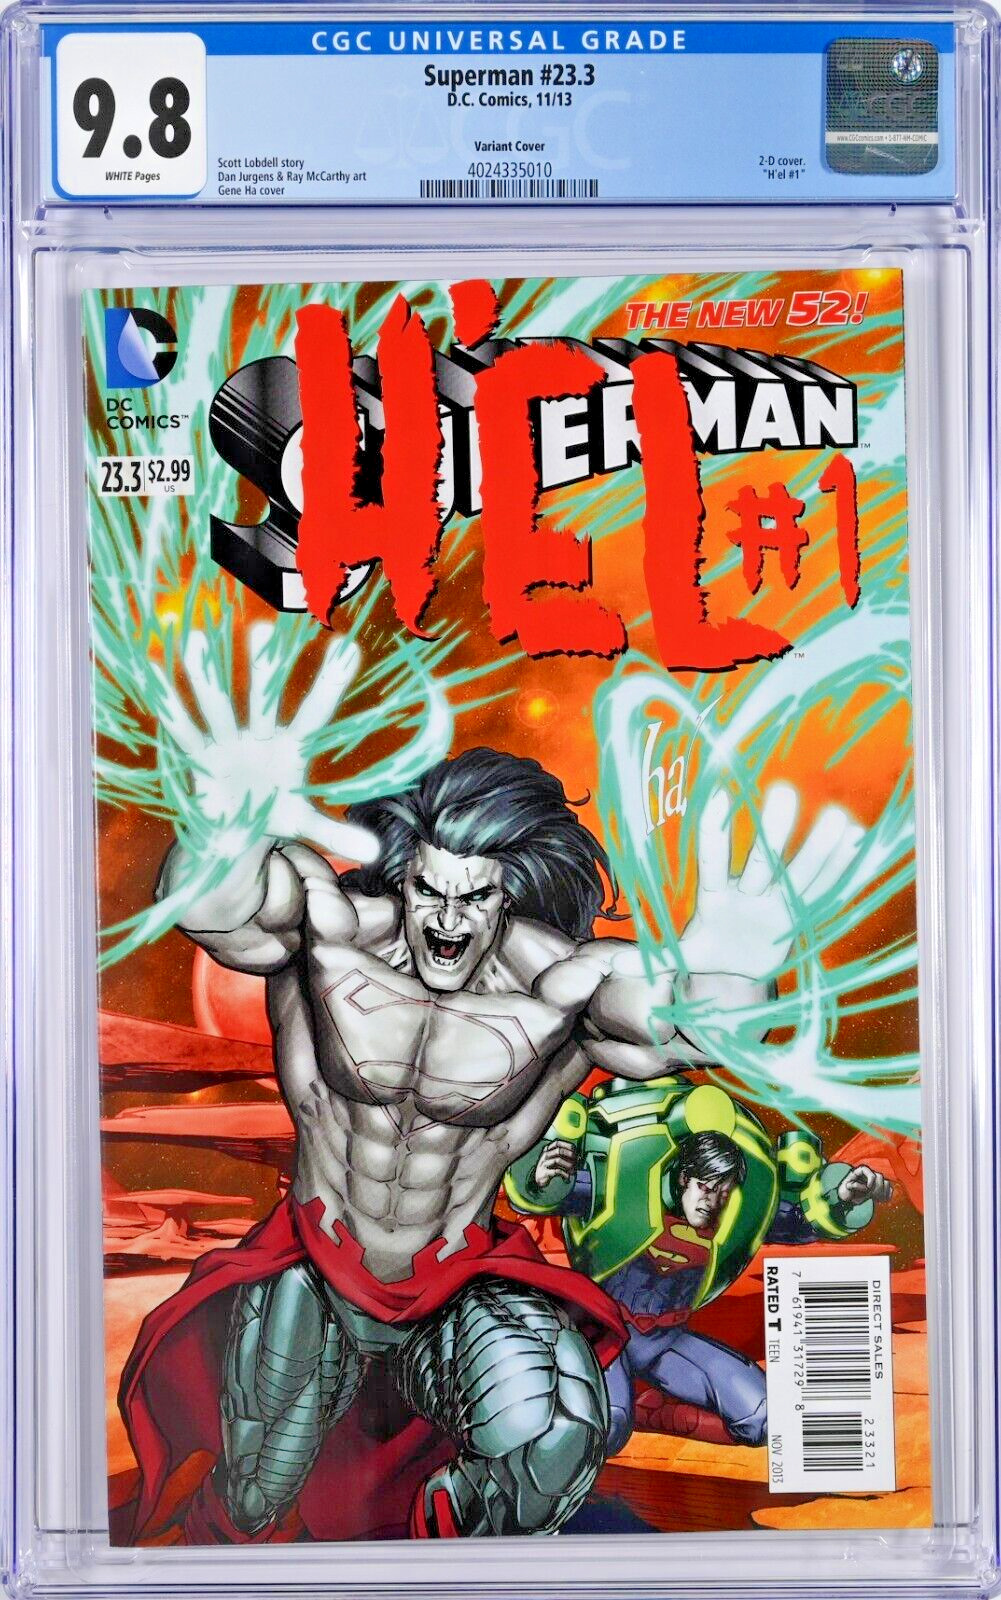 Superman #23.3 CGC 9.8 (Nov 2013, DC) Lobdell, Gene Ha 2-D Variant Cover, H'el